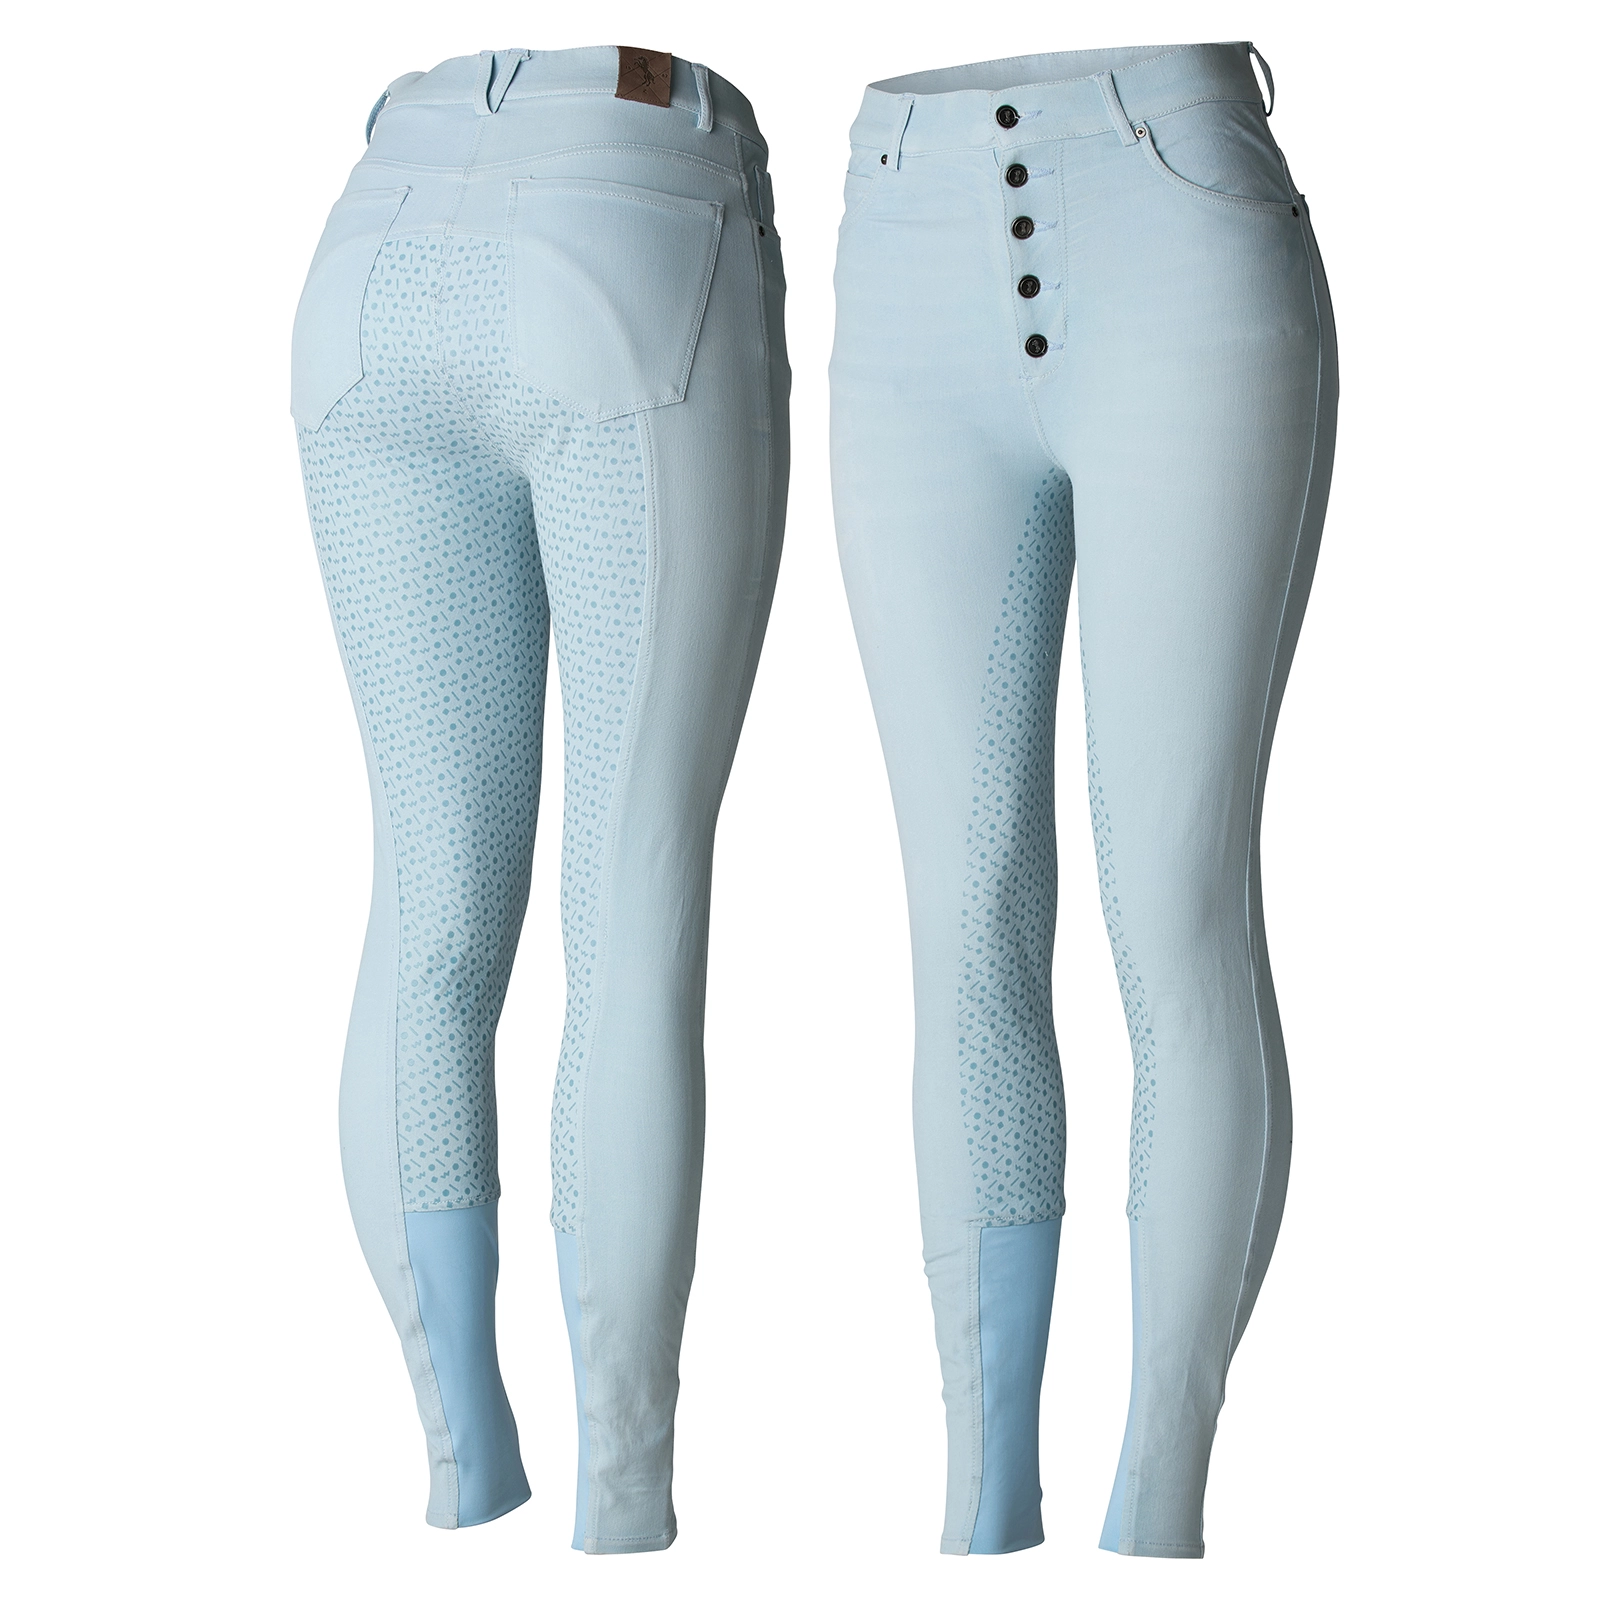 LIMITED EDITION - Bryczesy damskie pastelowe, jeansowe z pełnym lejem Horze Malibu